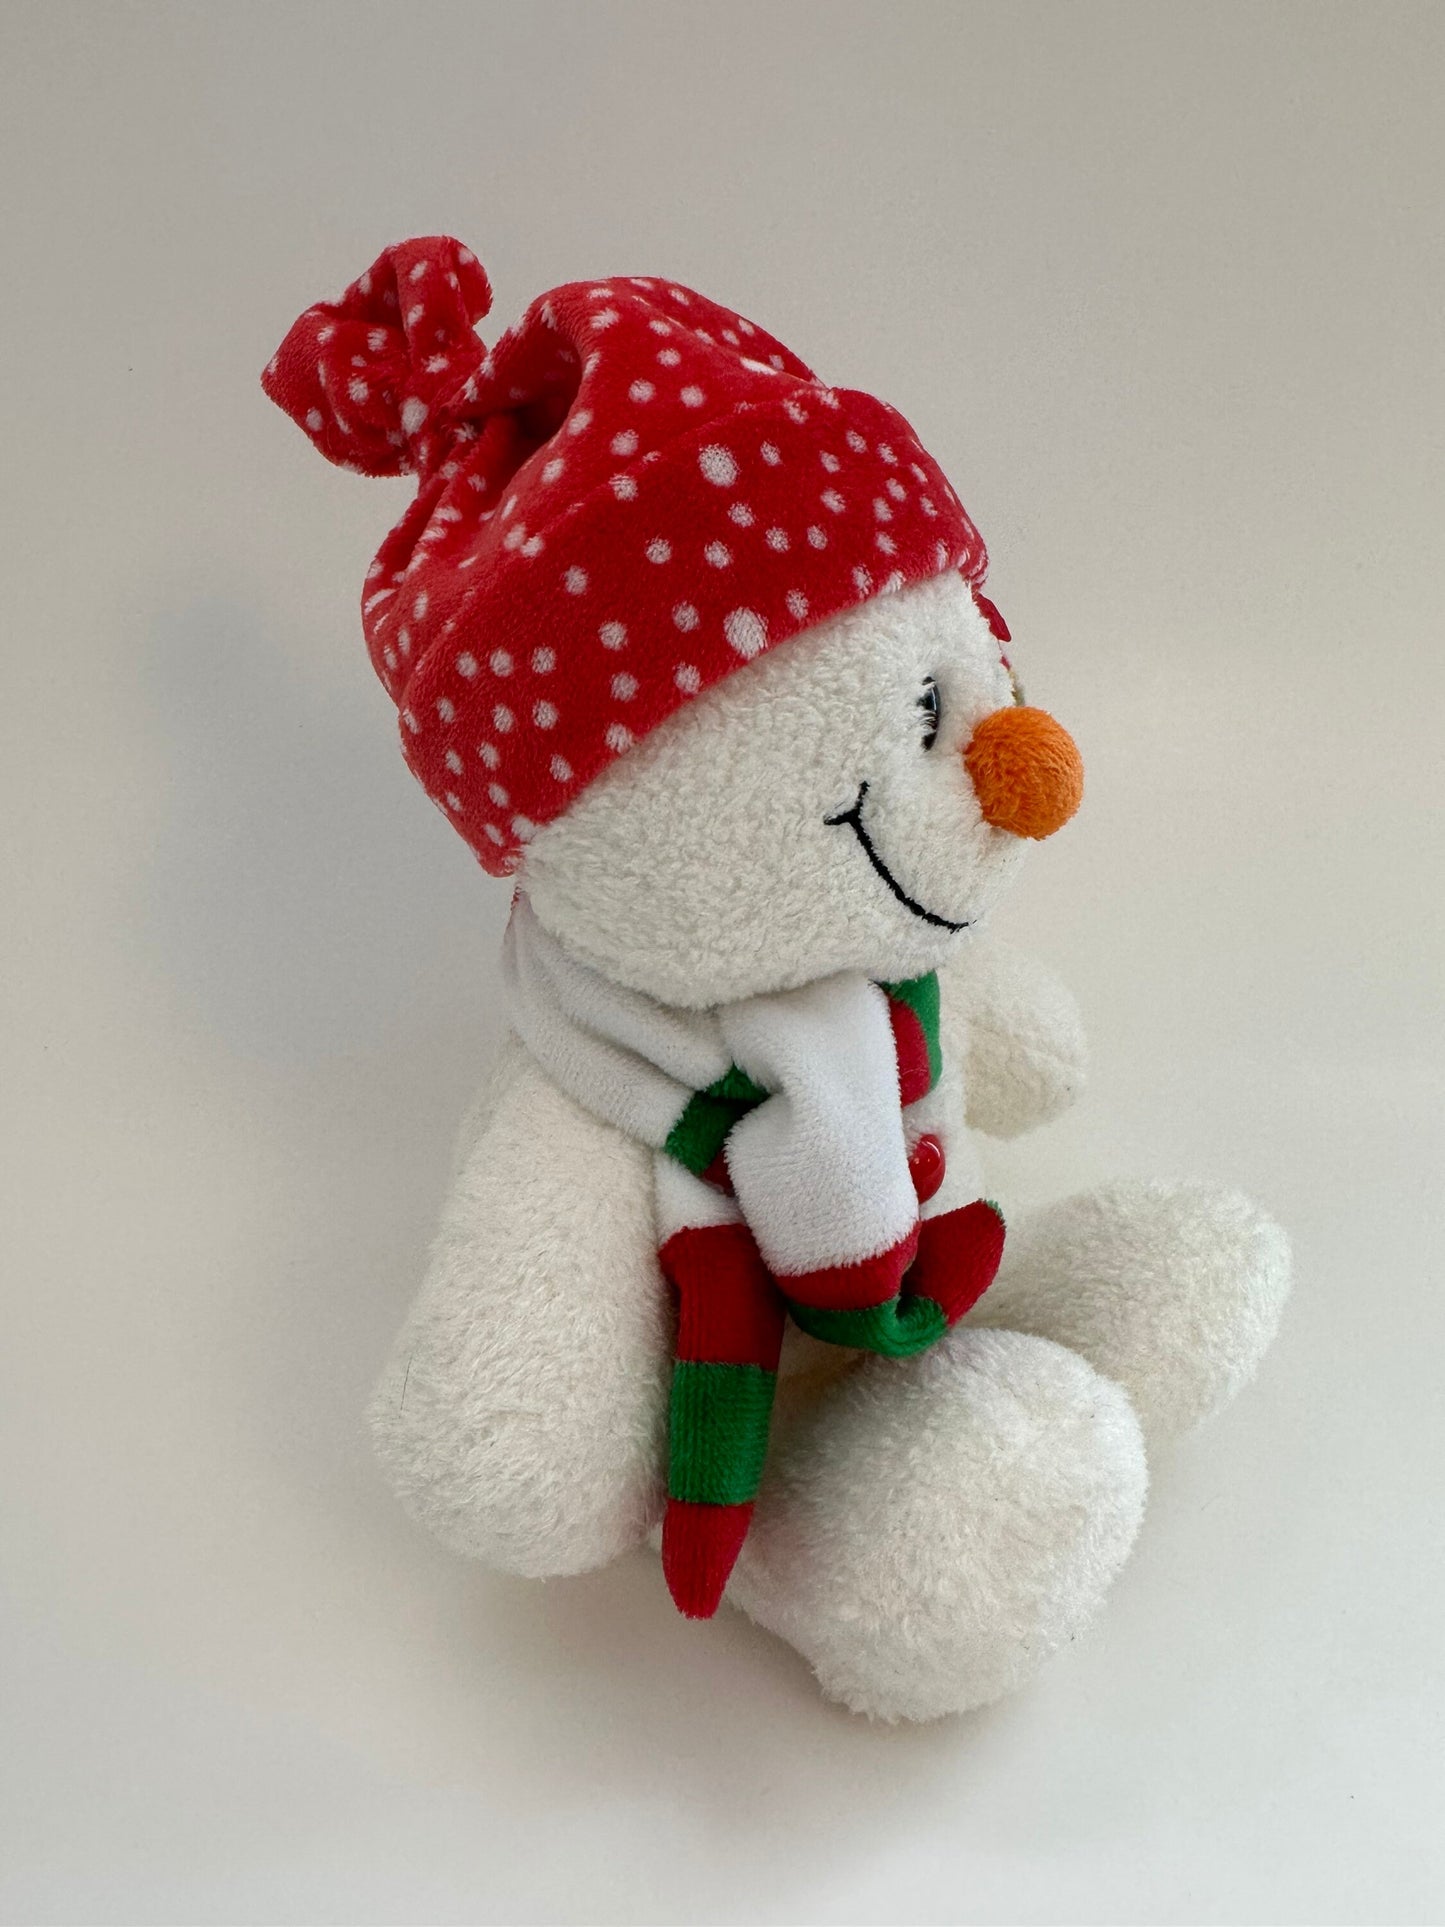 Ty Beanie Baby “Freezie” the Snowman (7 inch)